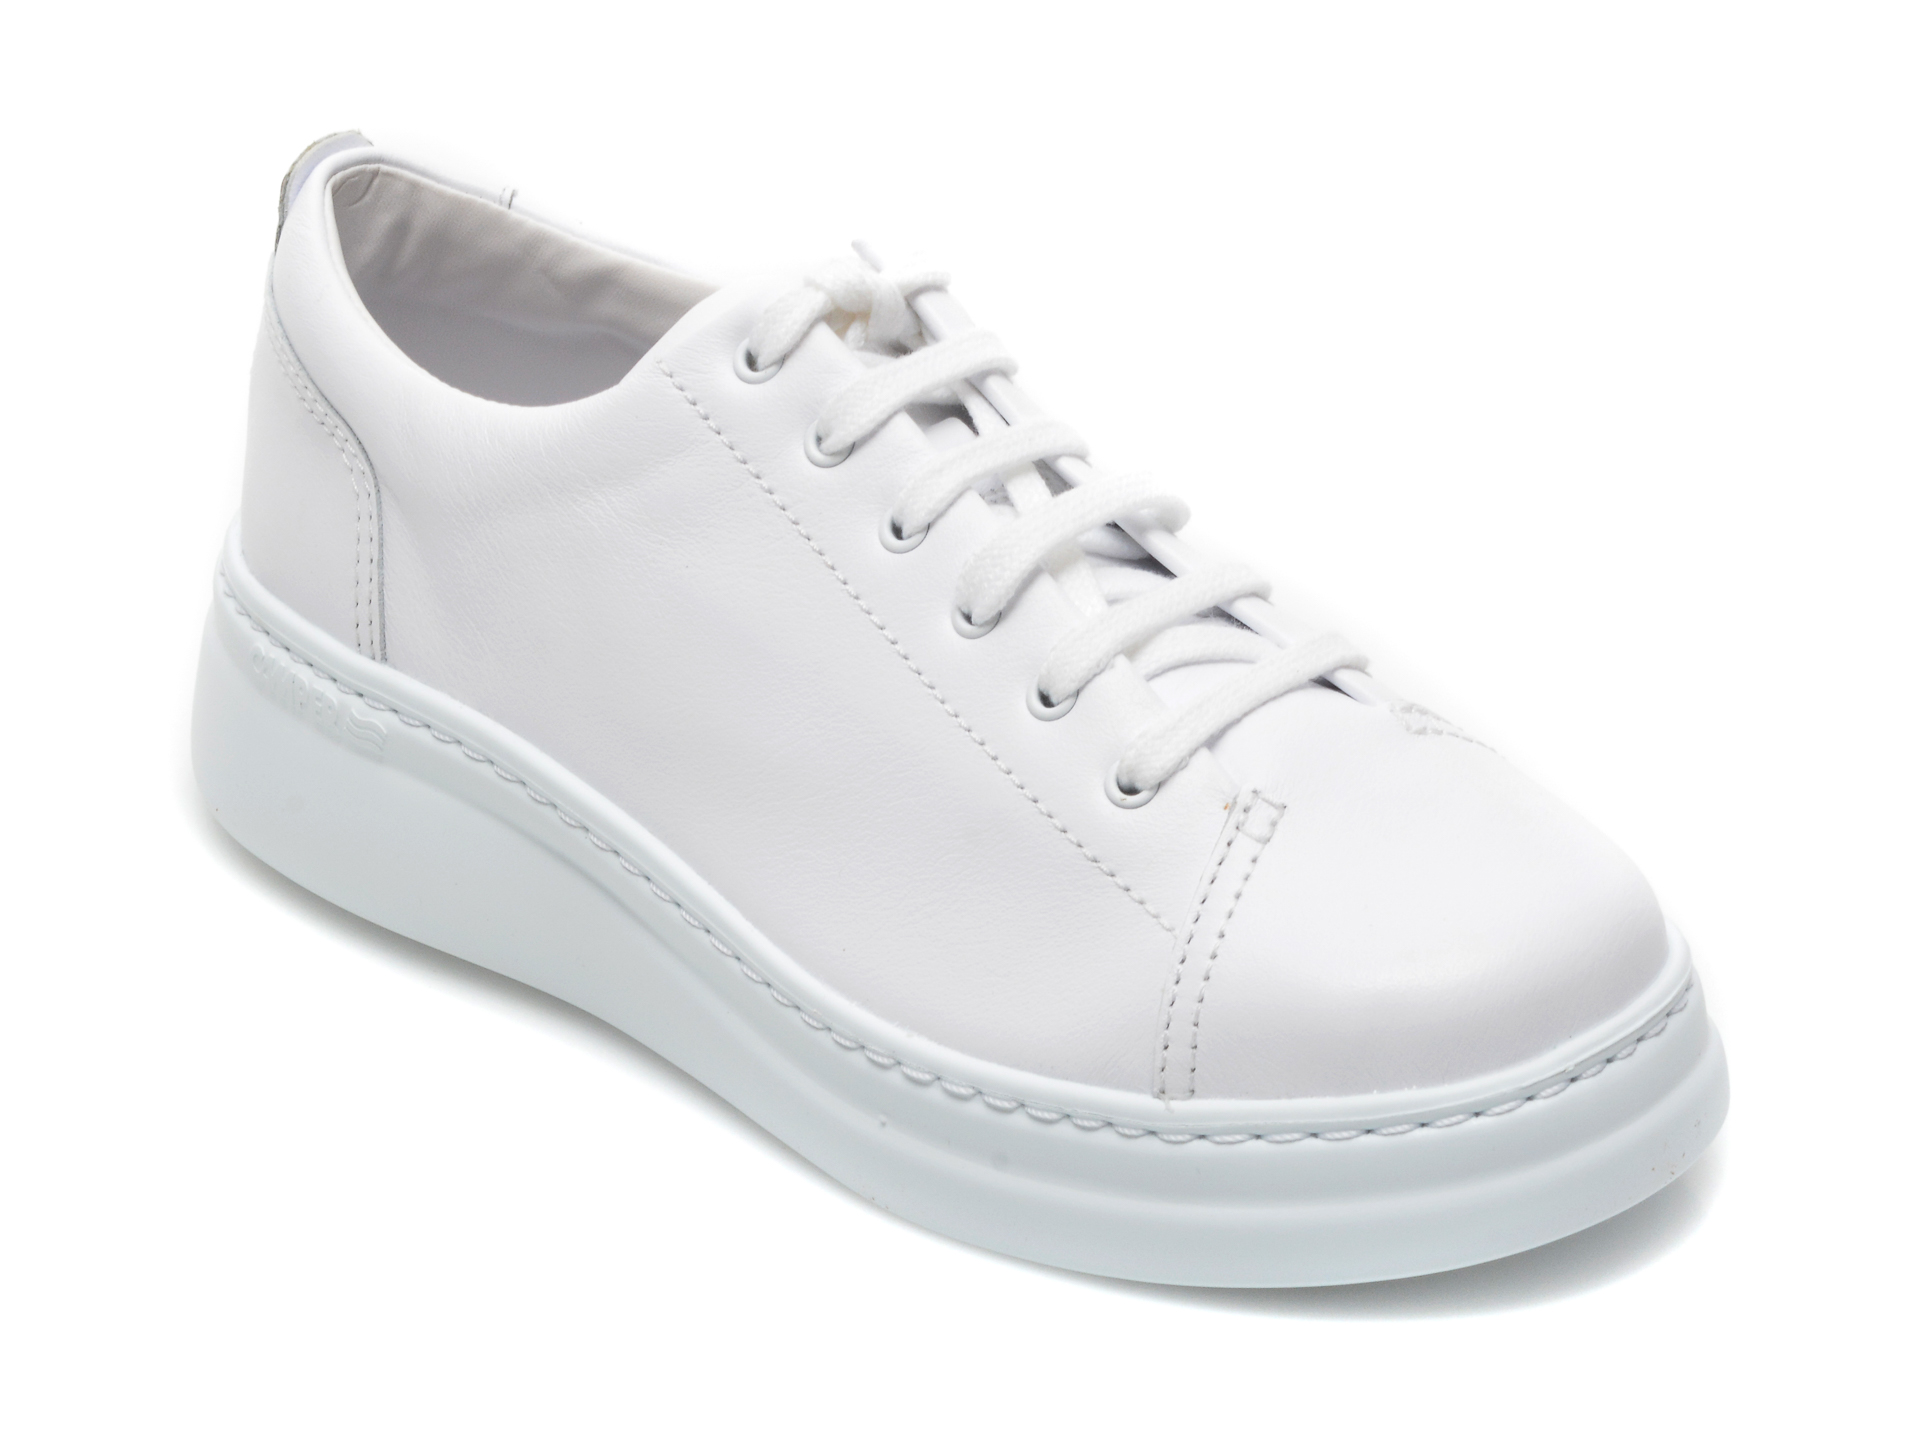 Pantofi CAMPER albi, K200508, din piele naturala Camper